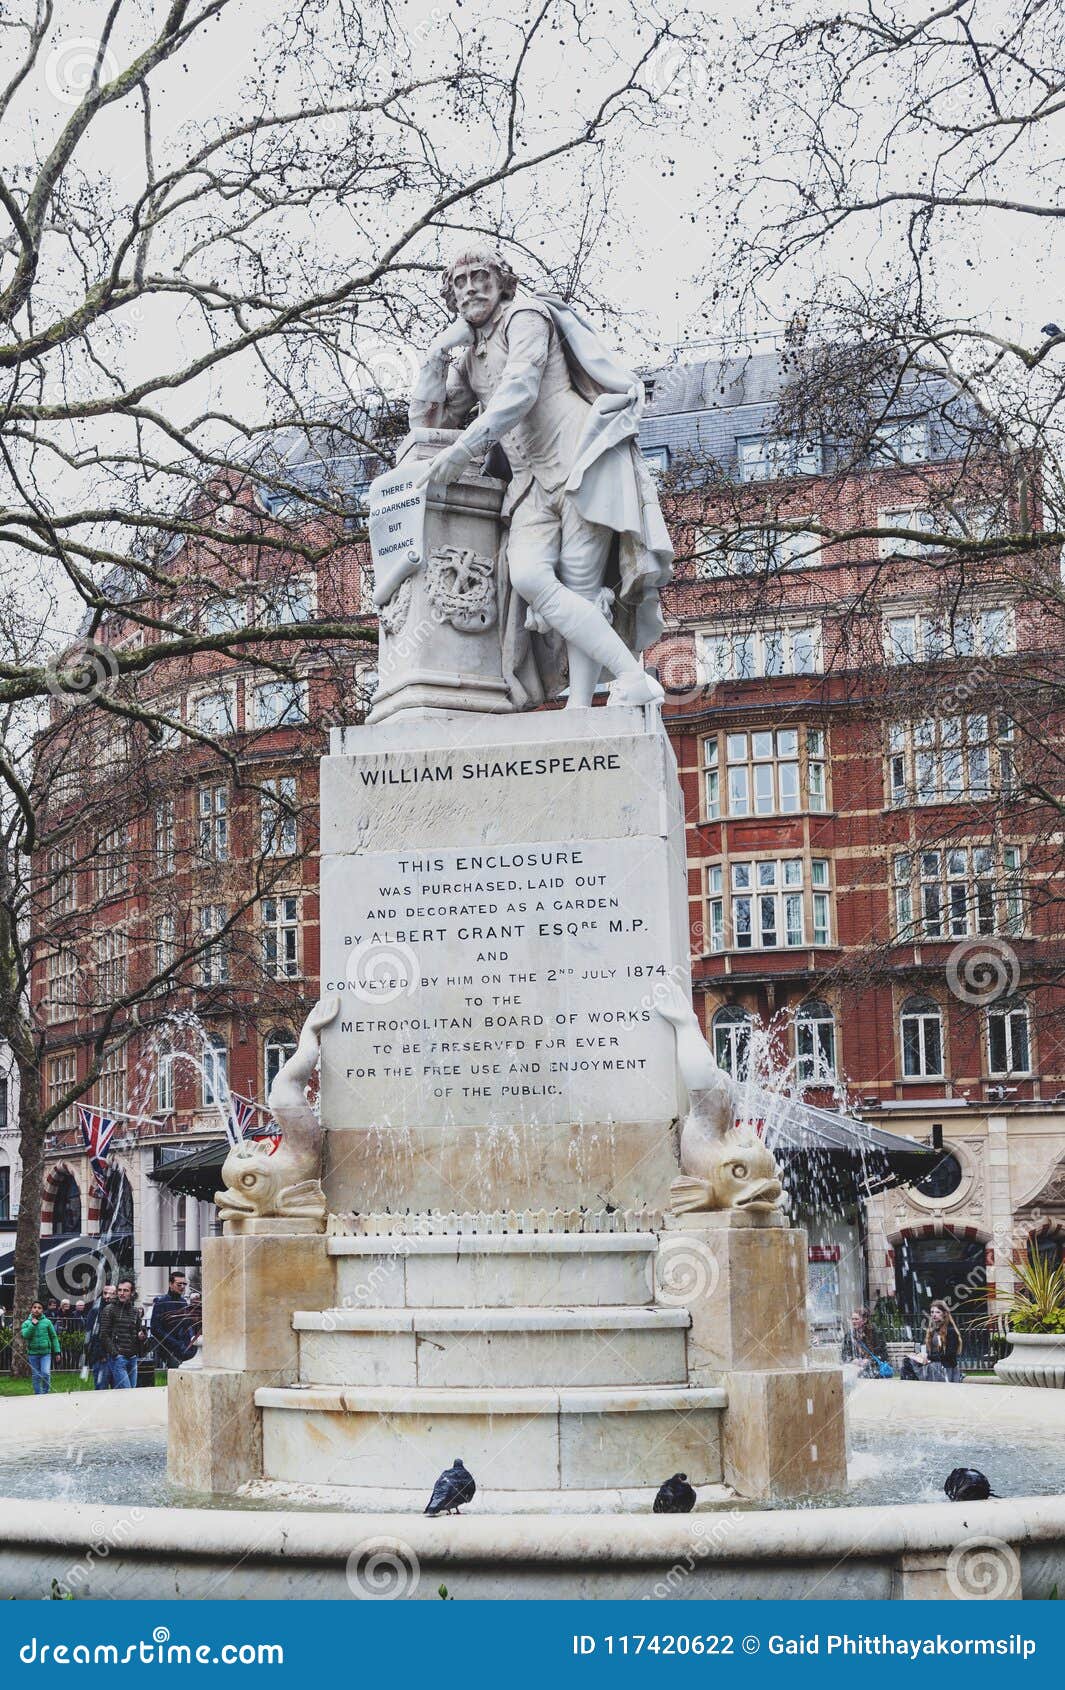 Μαρμάρινο άγαλμα του William Shakespeare τετραγωνικός κήπος Λέιτσεστερ στο Λονδίνο, Ηνωμένο Βασίλειο. Λονδίνο, UK - τον Απρίλιο του 2018: Η πηγή Shakespeare και το μαρμάρινο άγαλμα του William Shakespeare περιέβαλαν από τα δελφίνια, γλυπτά από το Giovanni Fontana, που βρέθηκε στο μικρό πάρκο στους τετραγωνικούς κήπους Λέιτσεστερ πόλη του Γουέστμινστερ, Λονδίνο, Ηνωμένο Βασίλειο